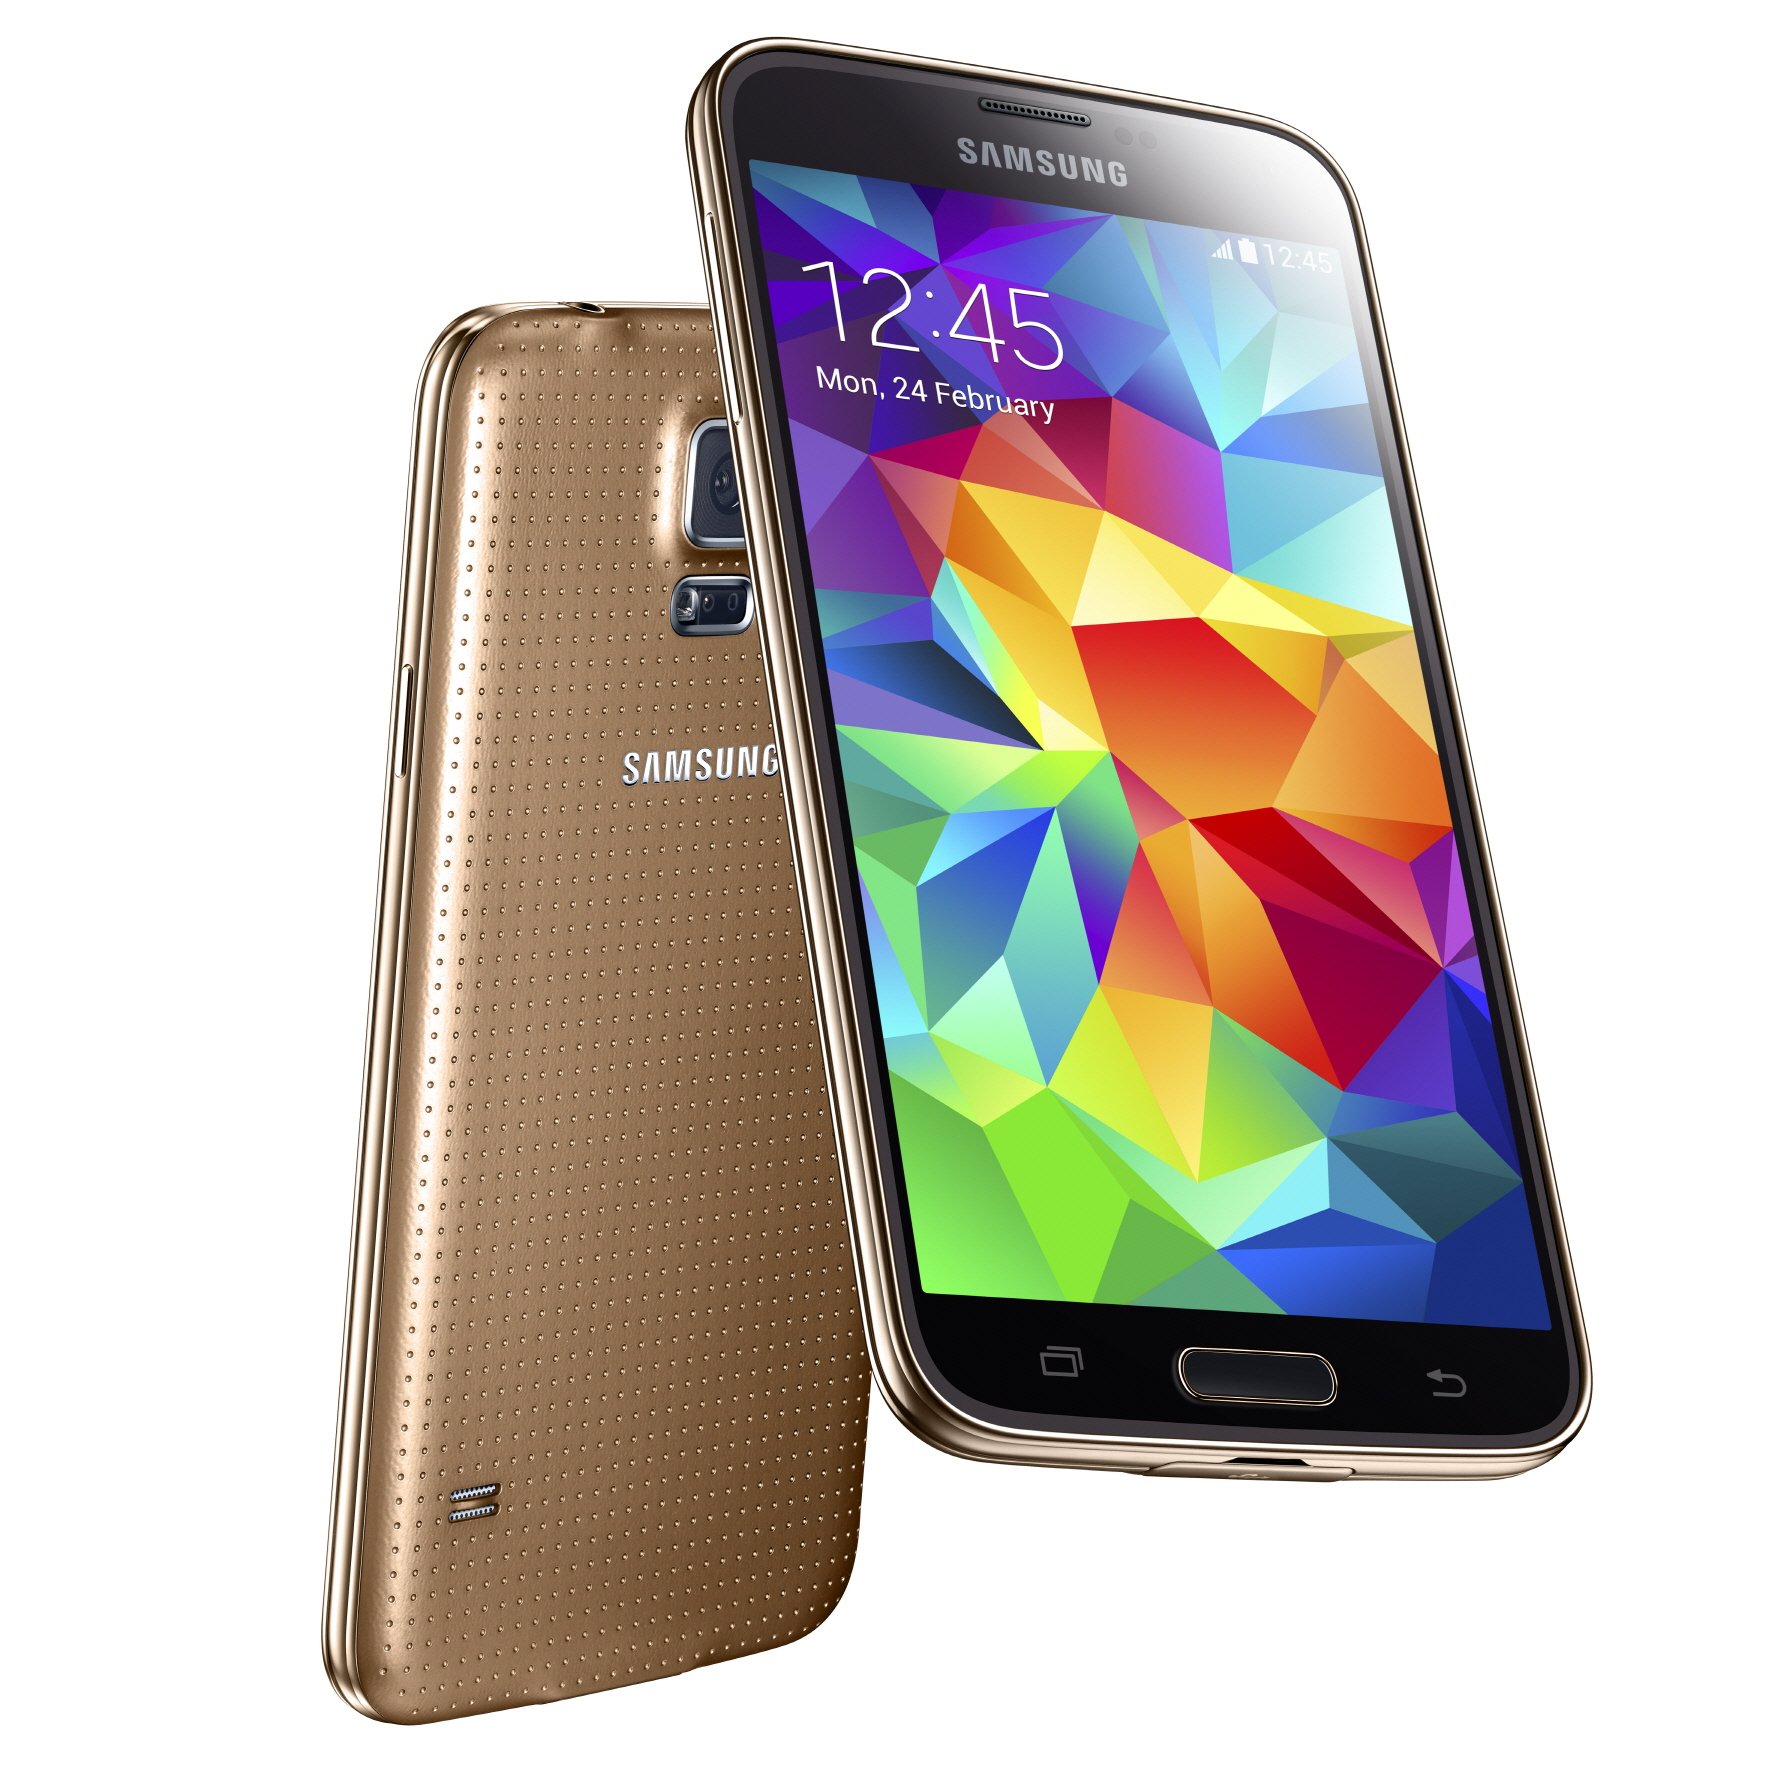 prijs Maori Van God Samsung Galaxy S5 Plus specs, review, release date - PhonesData